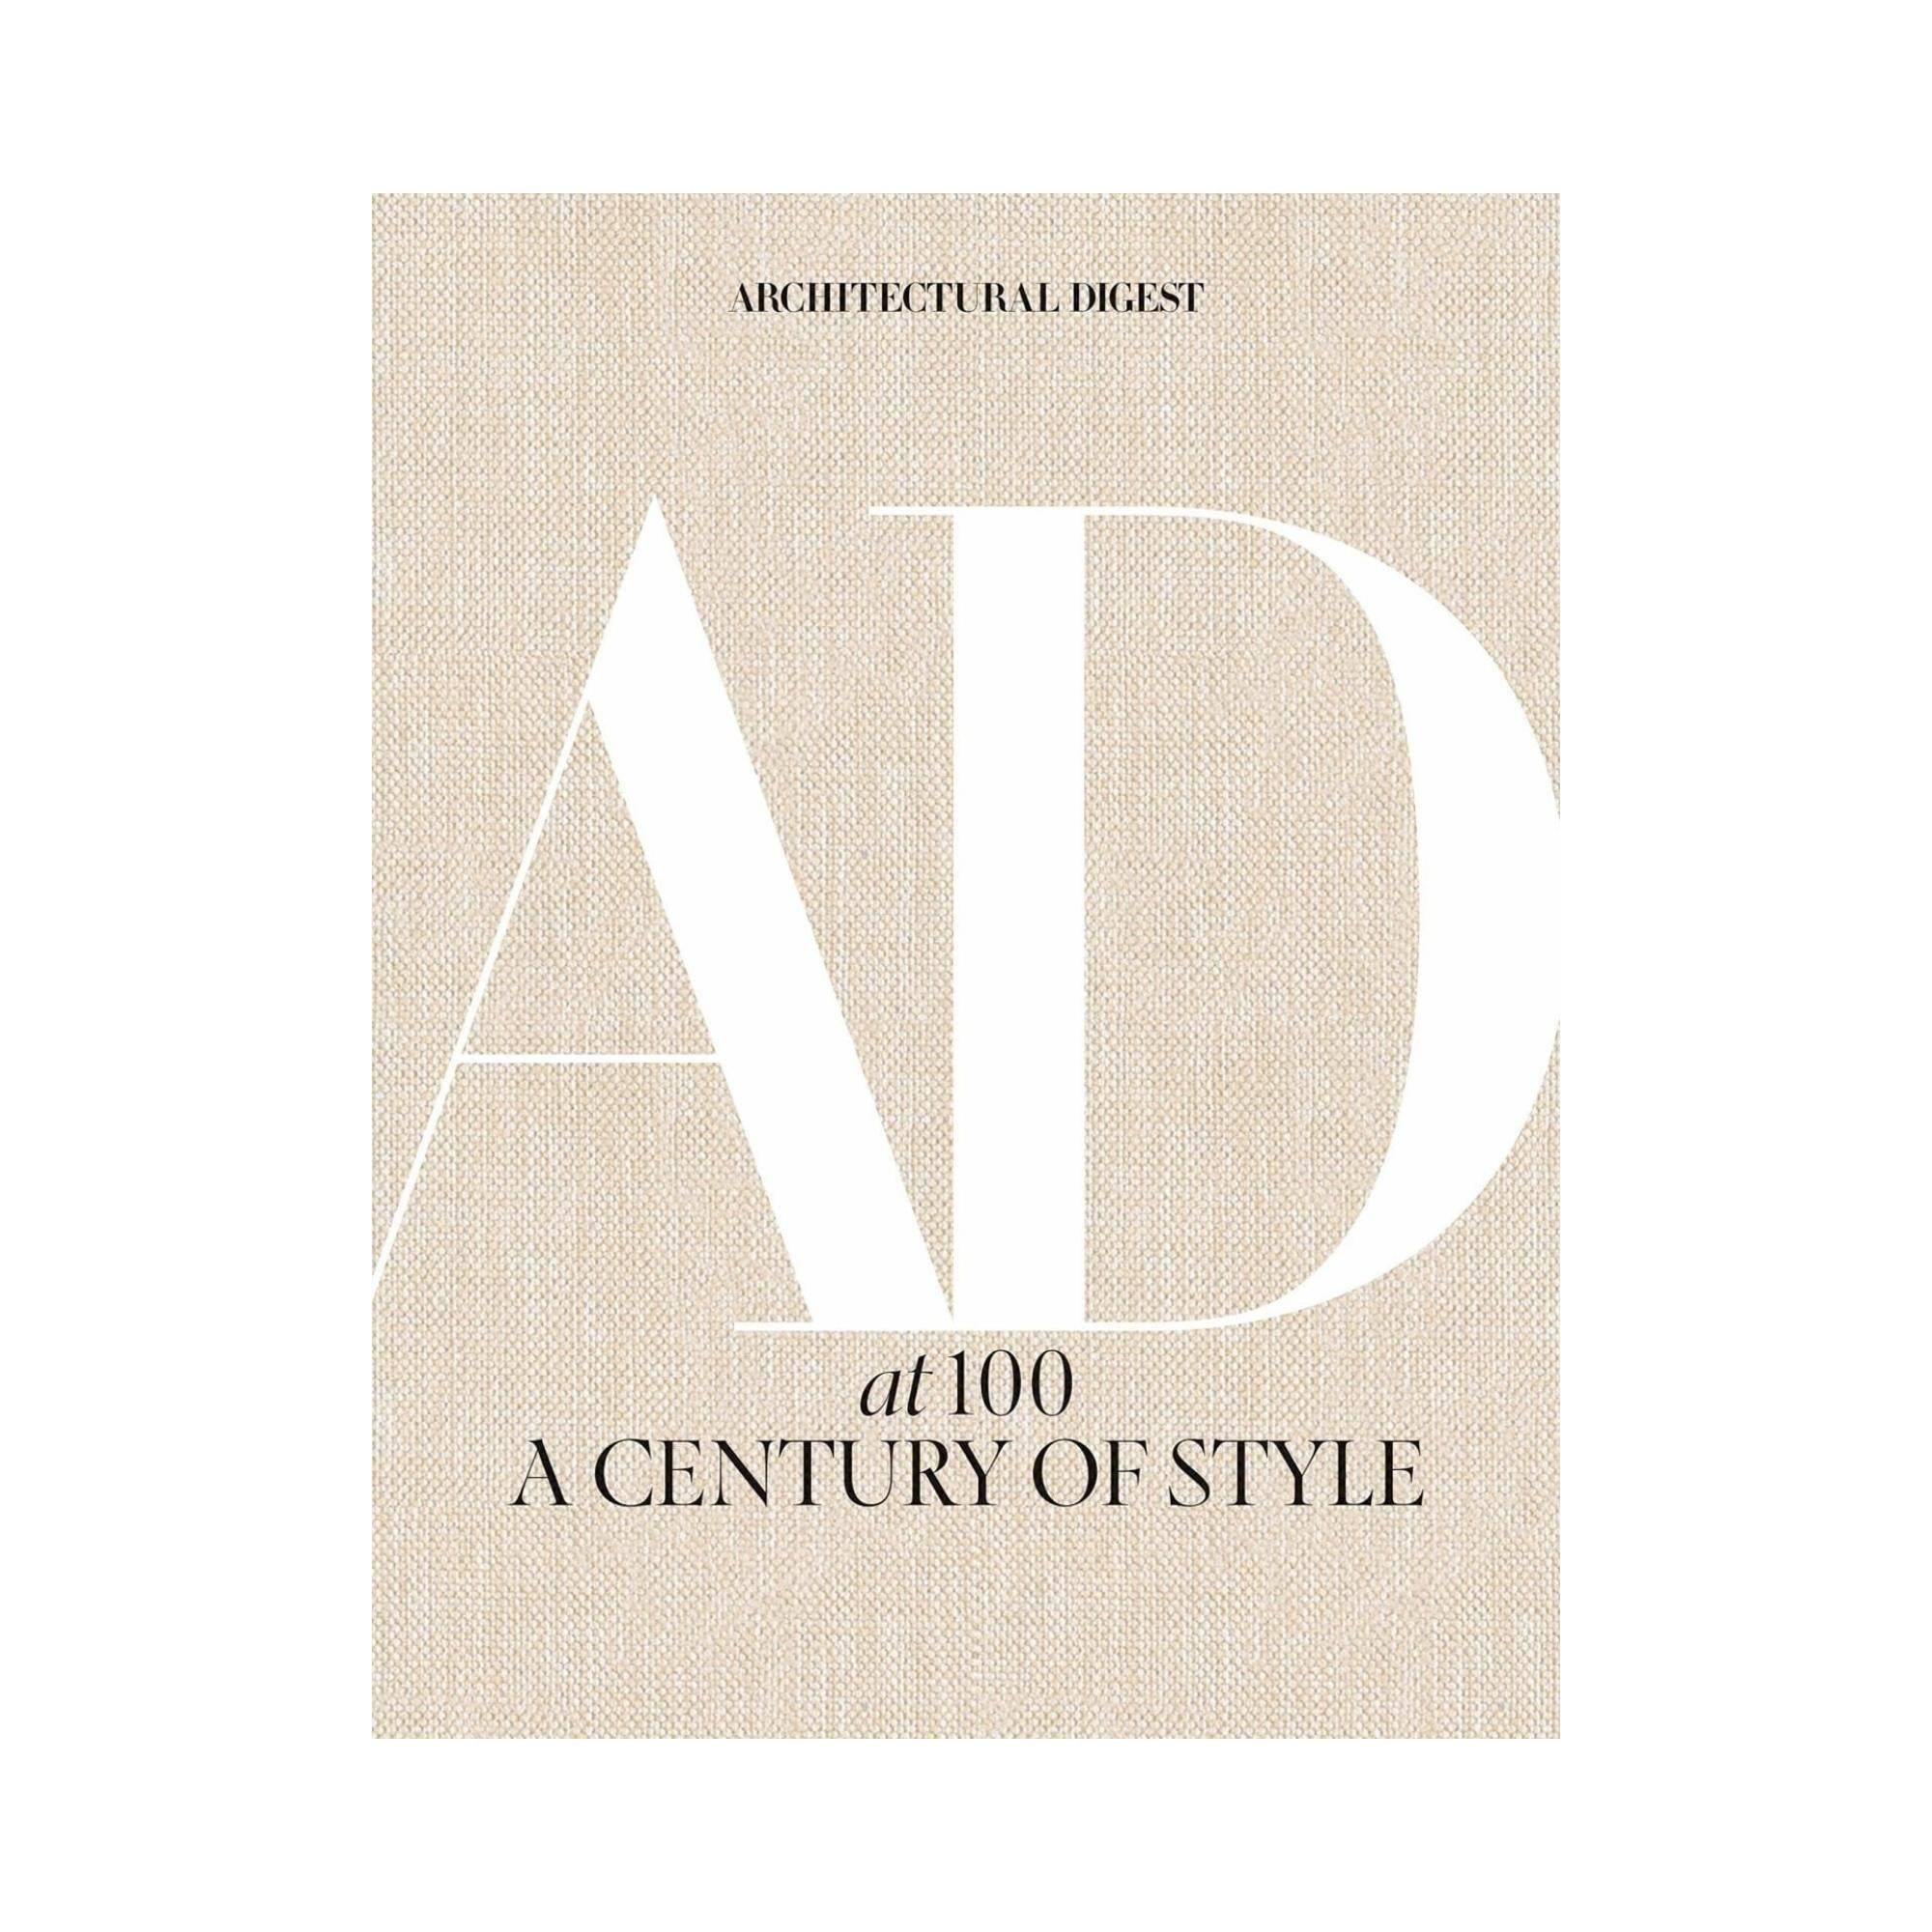 Architectural Digest à 100 ans : un siècle de style